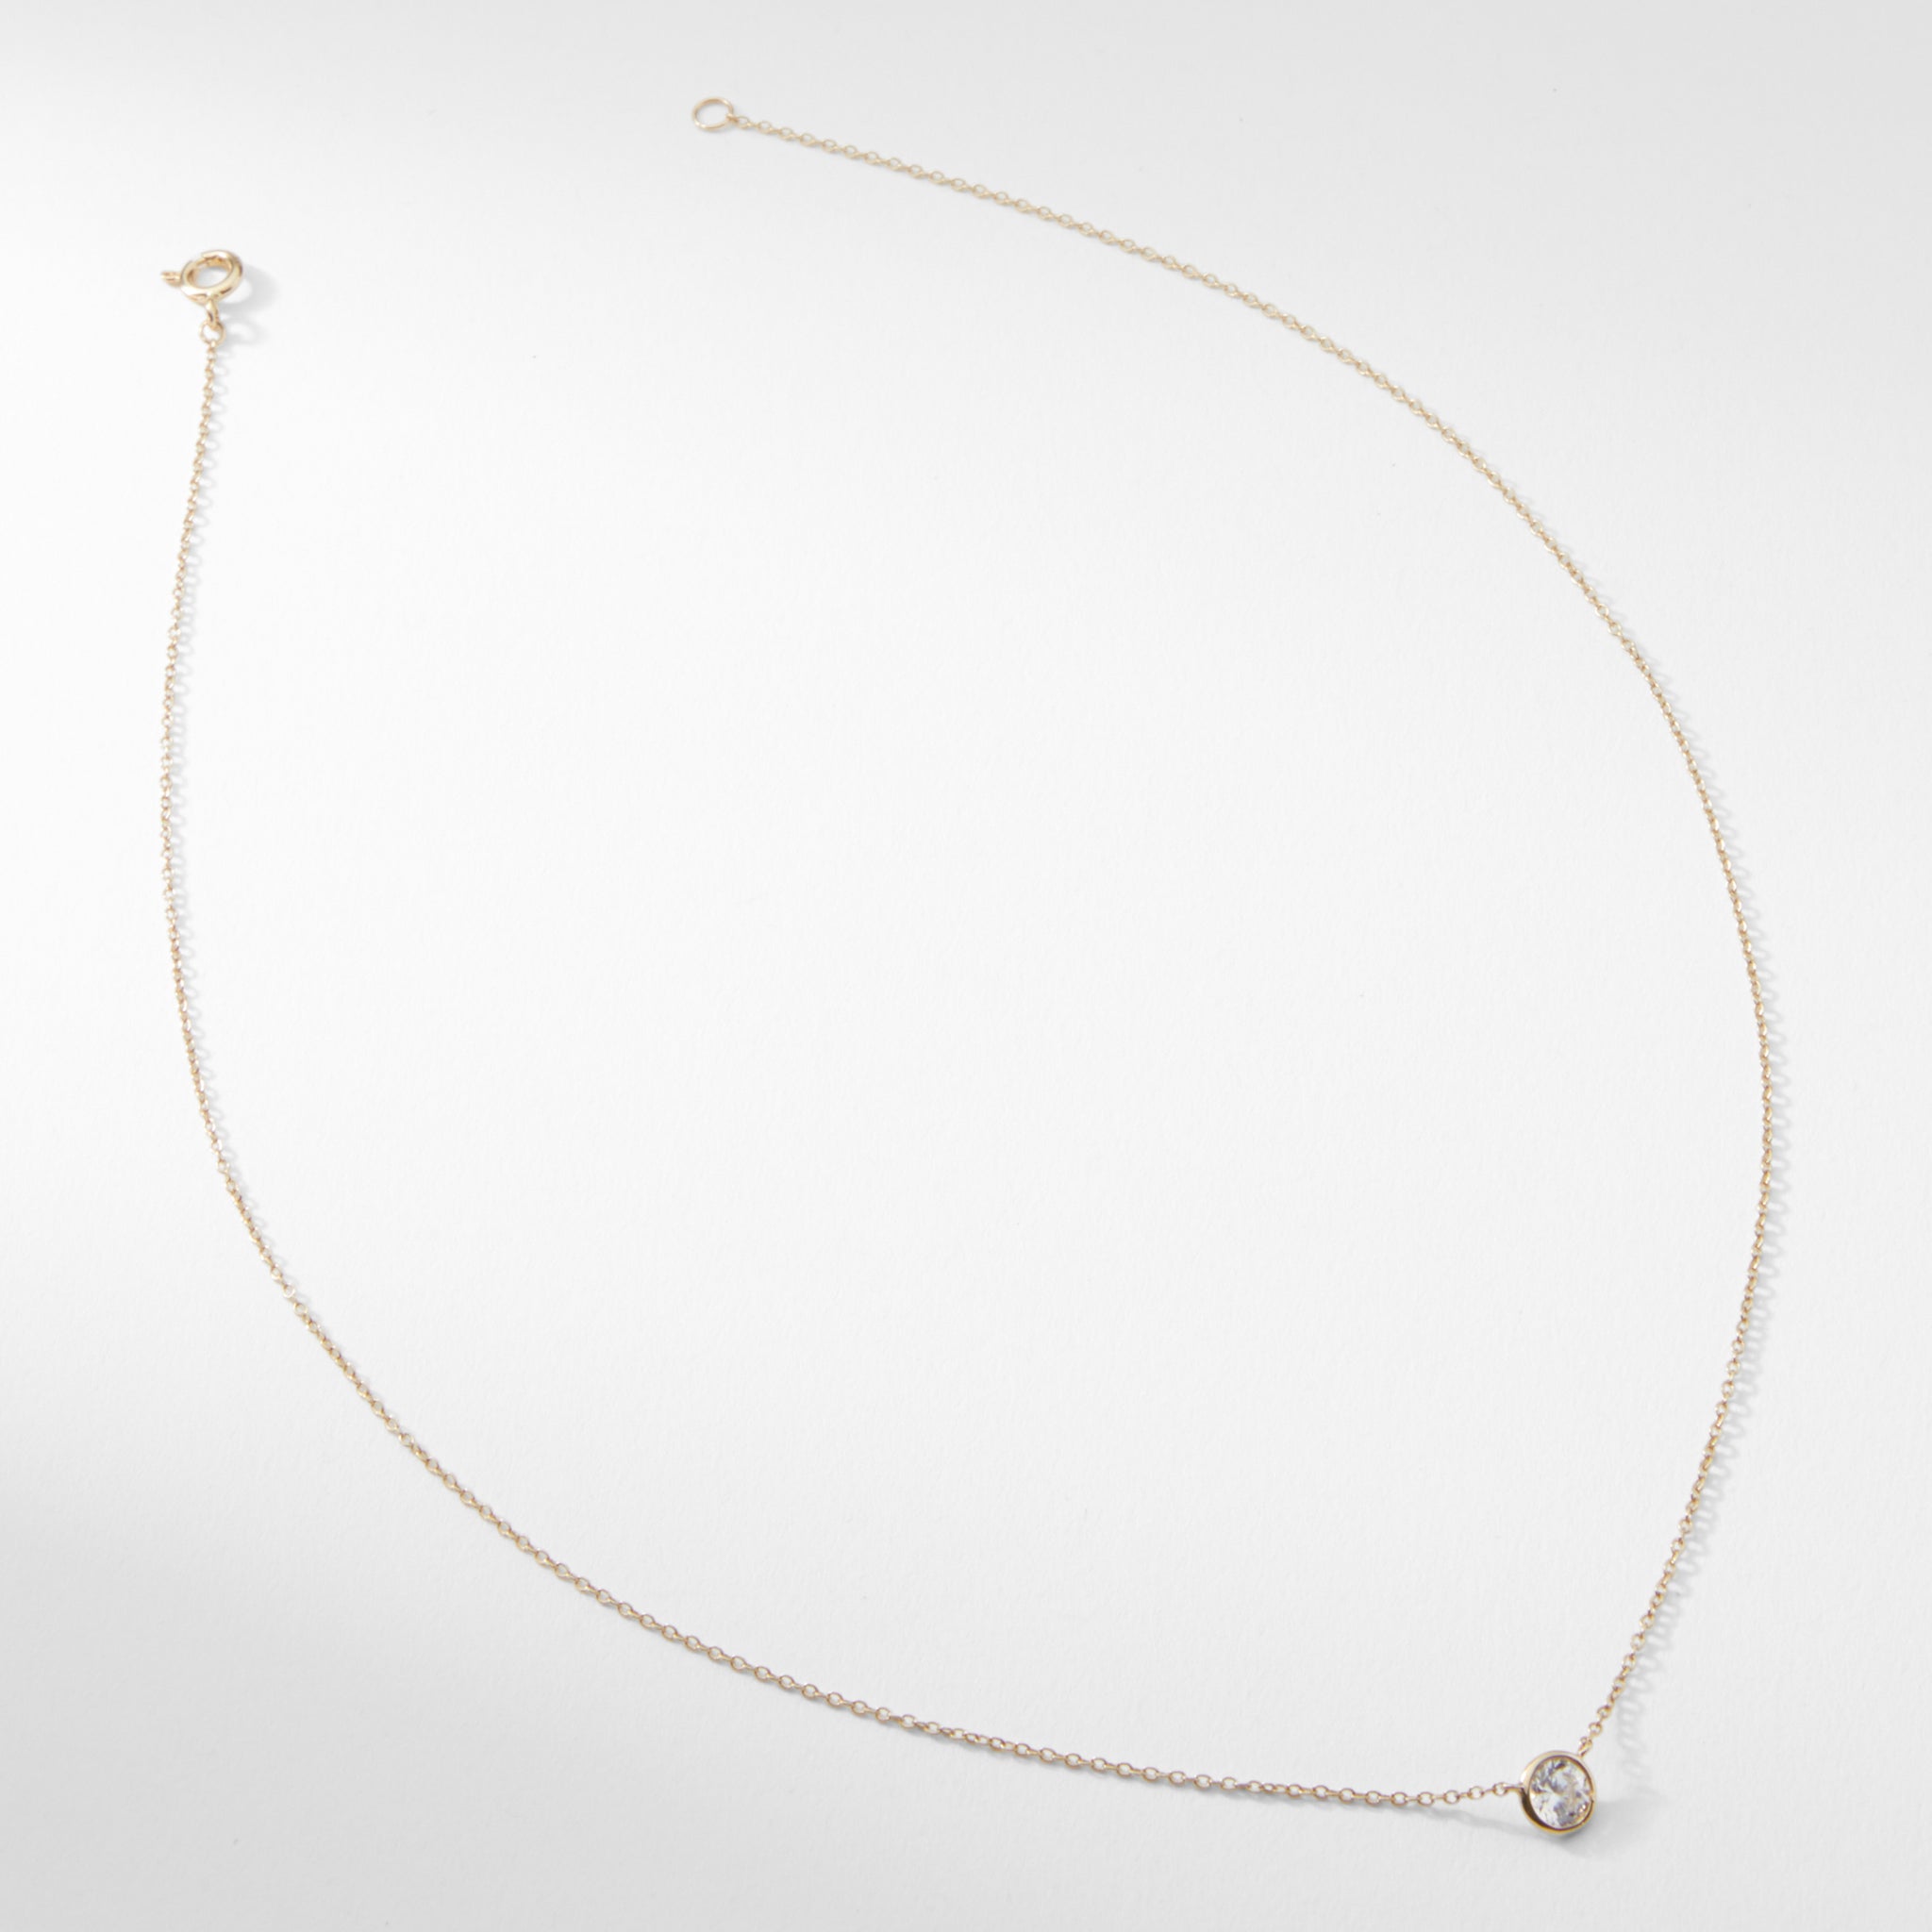 still image of the single bezel necklace 